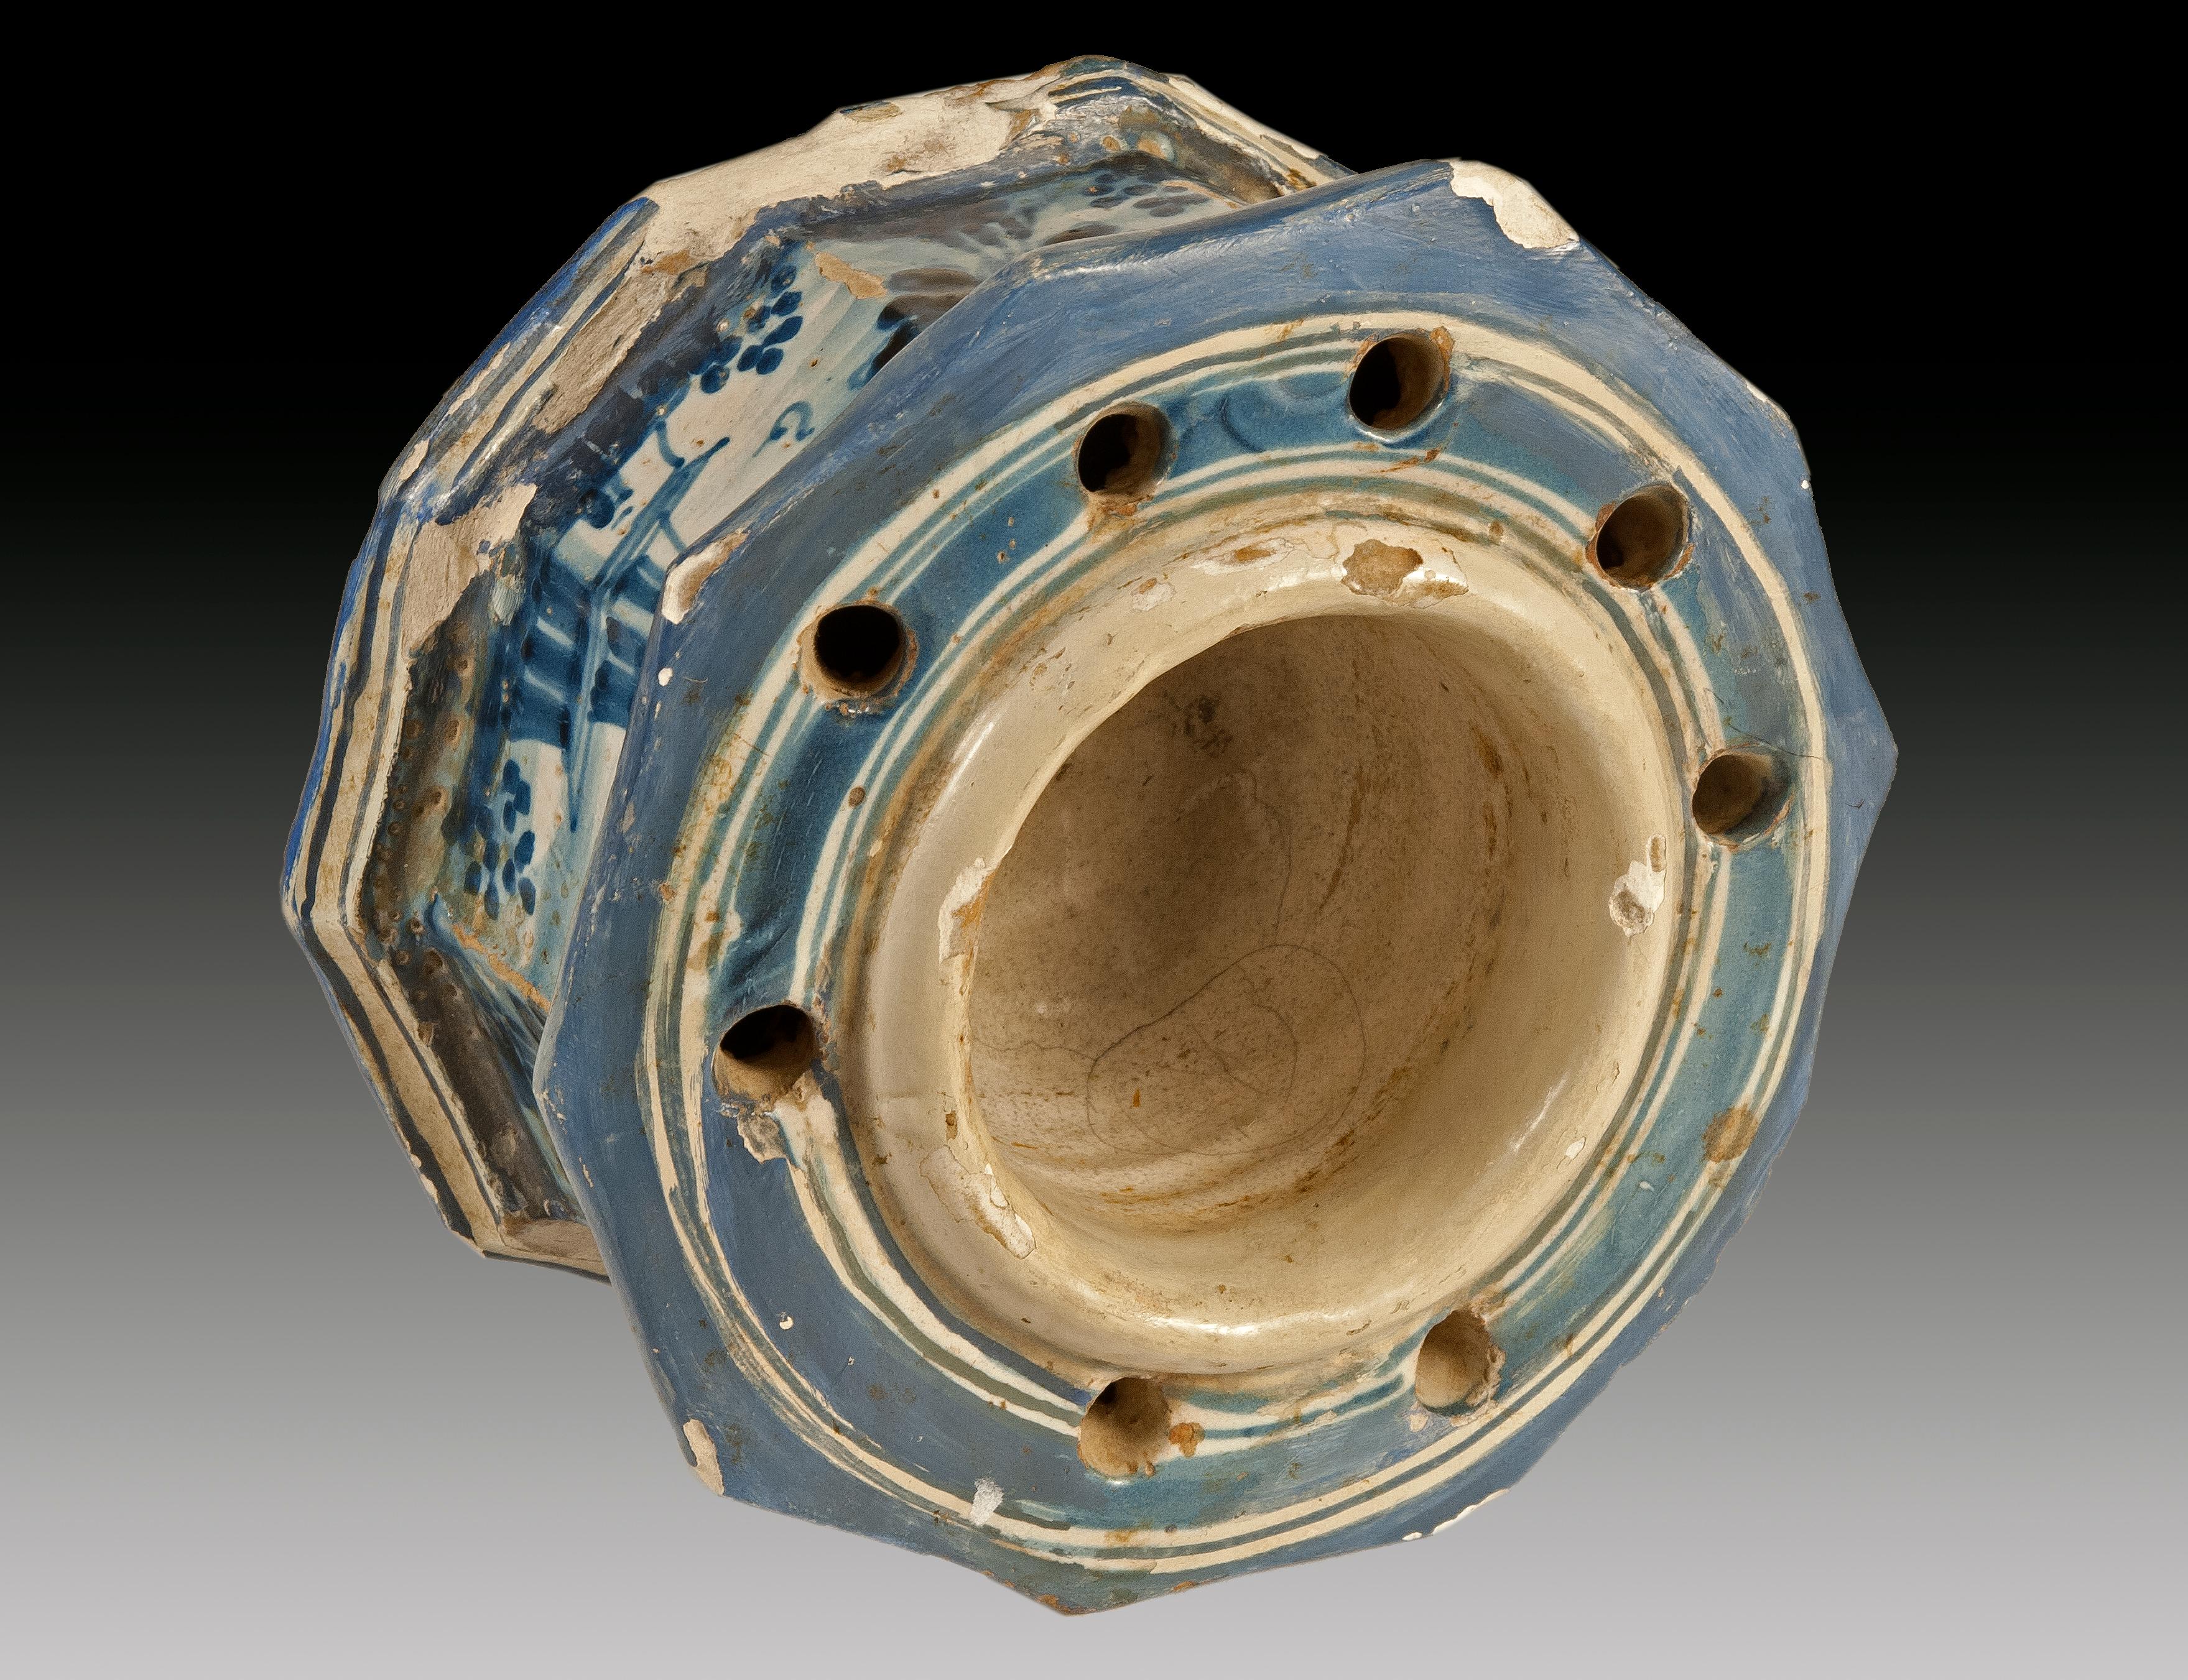 Talavera-Tintenfass, 18. Jahrhundert. Glasierte Töpferwaren
Tintenfass aus Talavera-Keramik, verziert mit kobaltblauer Emaille auf weißem Zinnslip
mit Wiederherstellungen